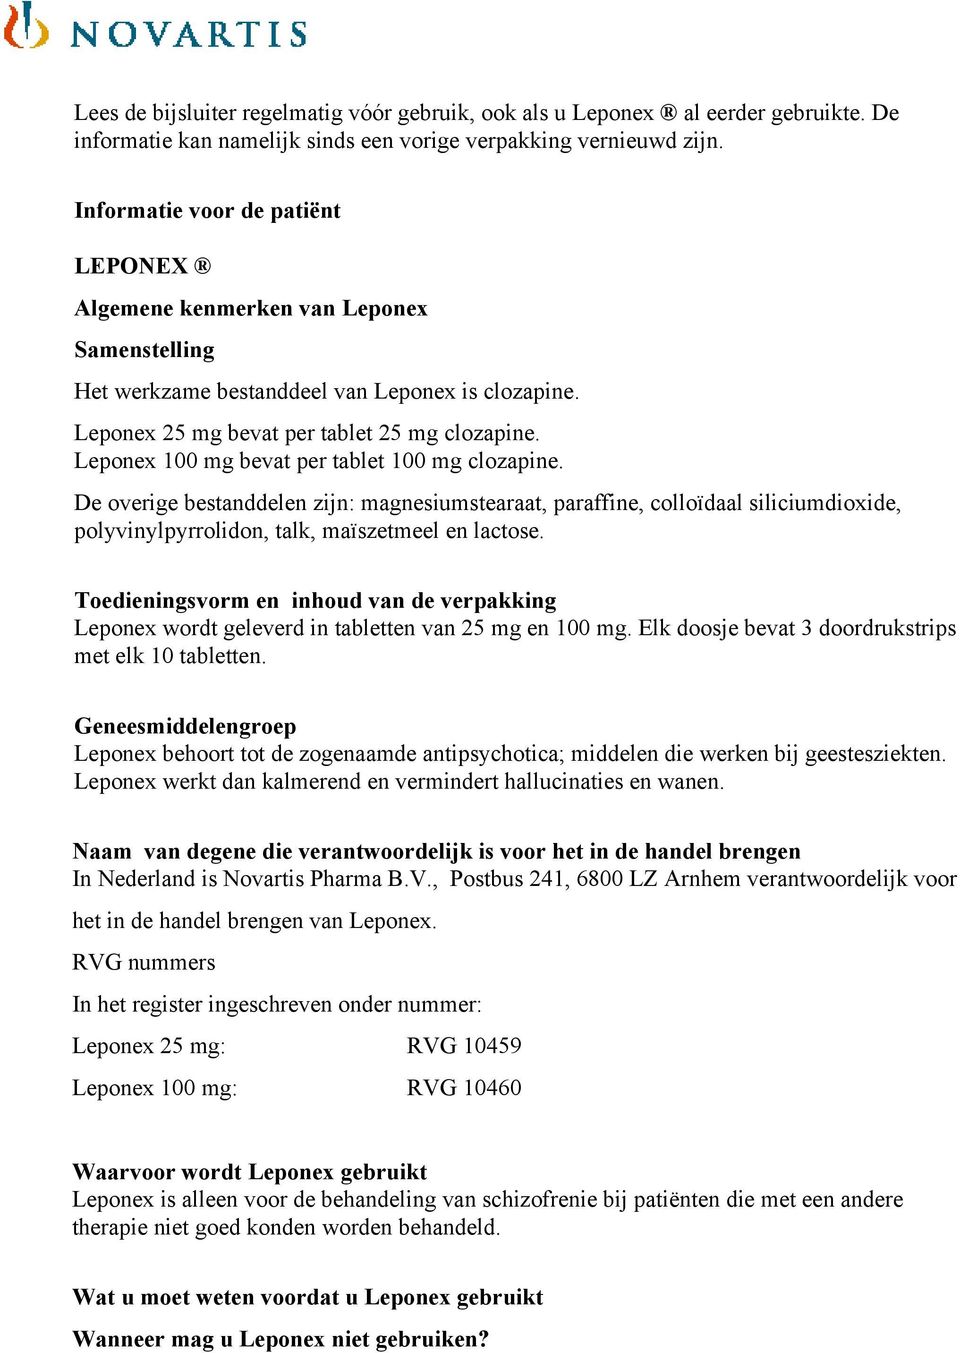 Leponex 100 mg bevat per tablet 100 mg clozapine. De overige bestanddelen zijn: magnesiumstearaat, paraffine, colloïdaal siliciumdioxide, polyvinylpyrrolidon, talk, maïszetmeel en lactose.